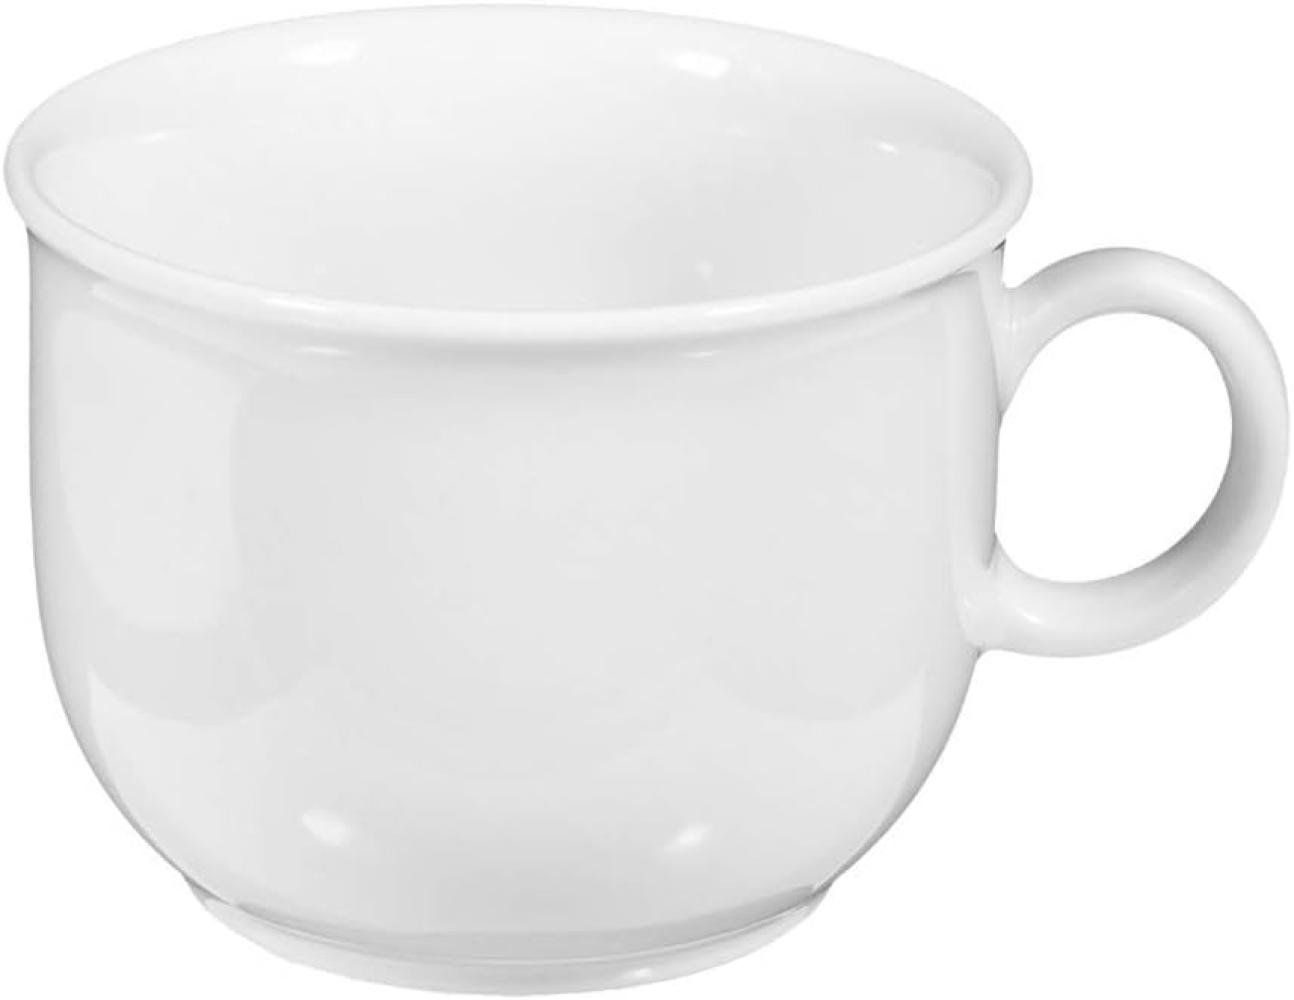 Kaffeetasse Compact weiß Bild 1